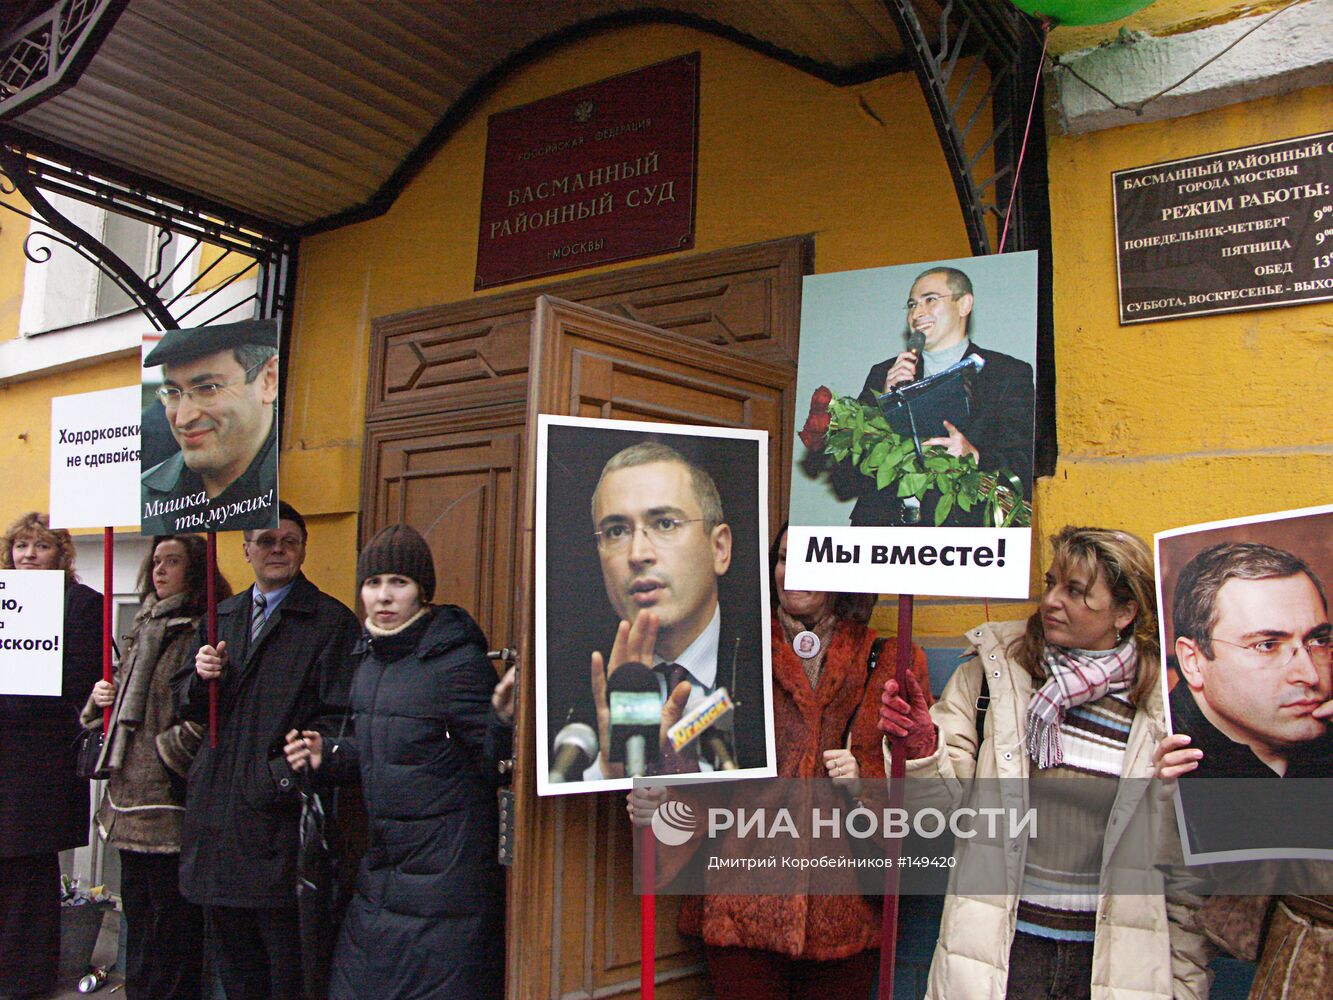 Пикет в поддержку Михаила Ходорковского